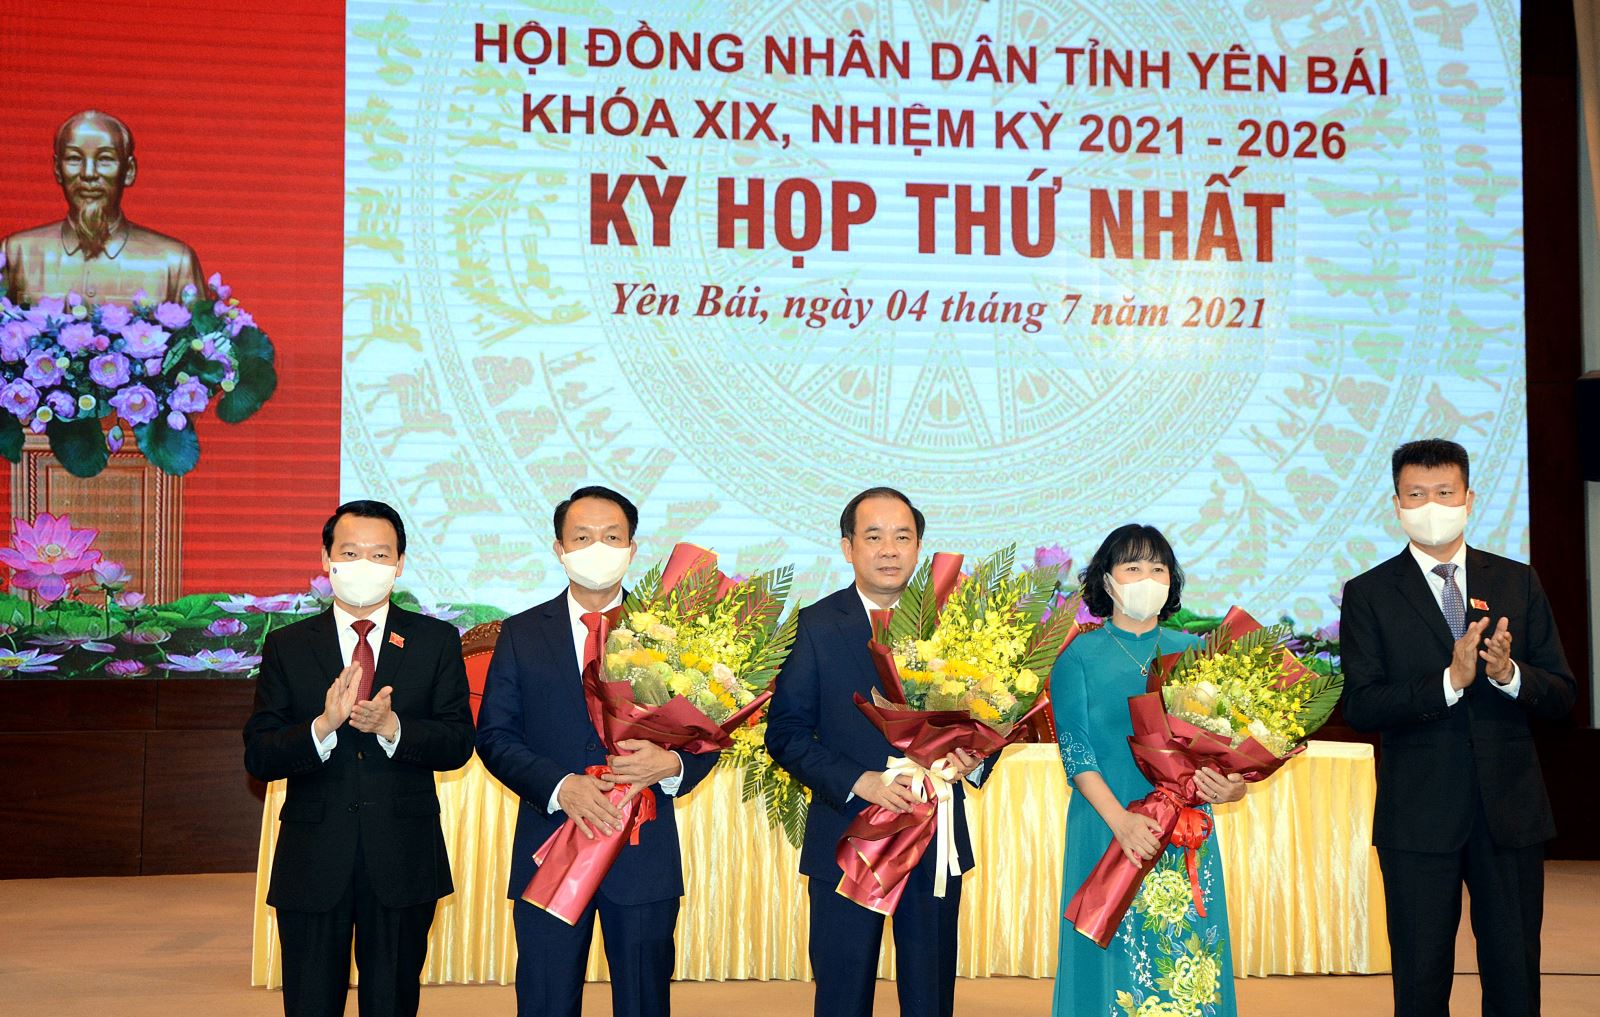 Bí thư Tỉnh ủy Đỗ Đức Duy tặng hoa chúc mừng Chủ tịch HĐND tỉnh và các Phó Chủ tịch HĐND tỉnh Khóa XIX 